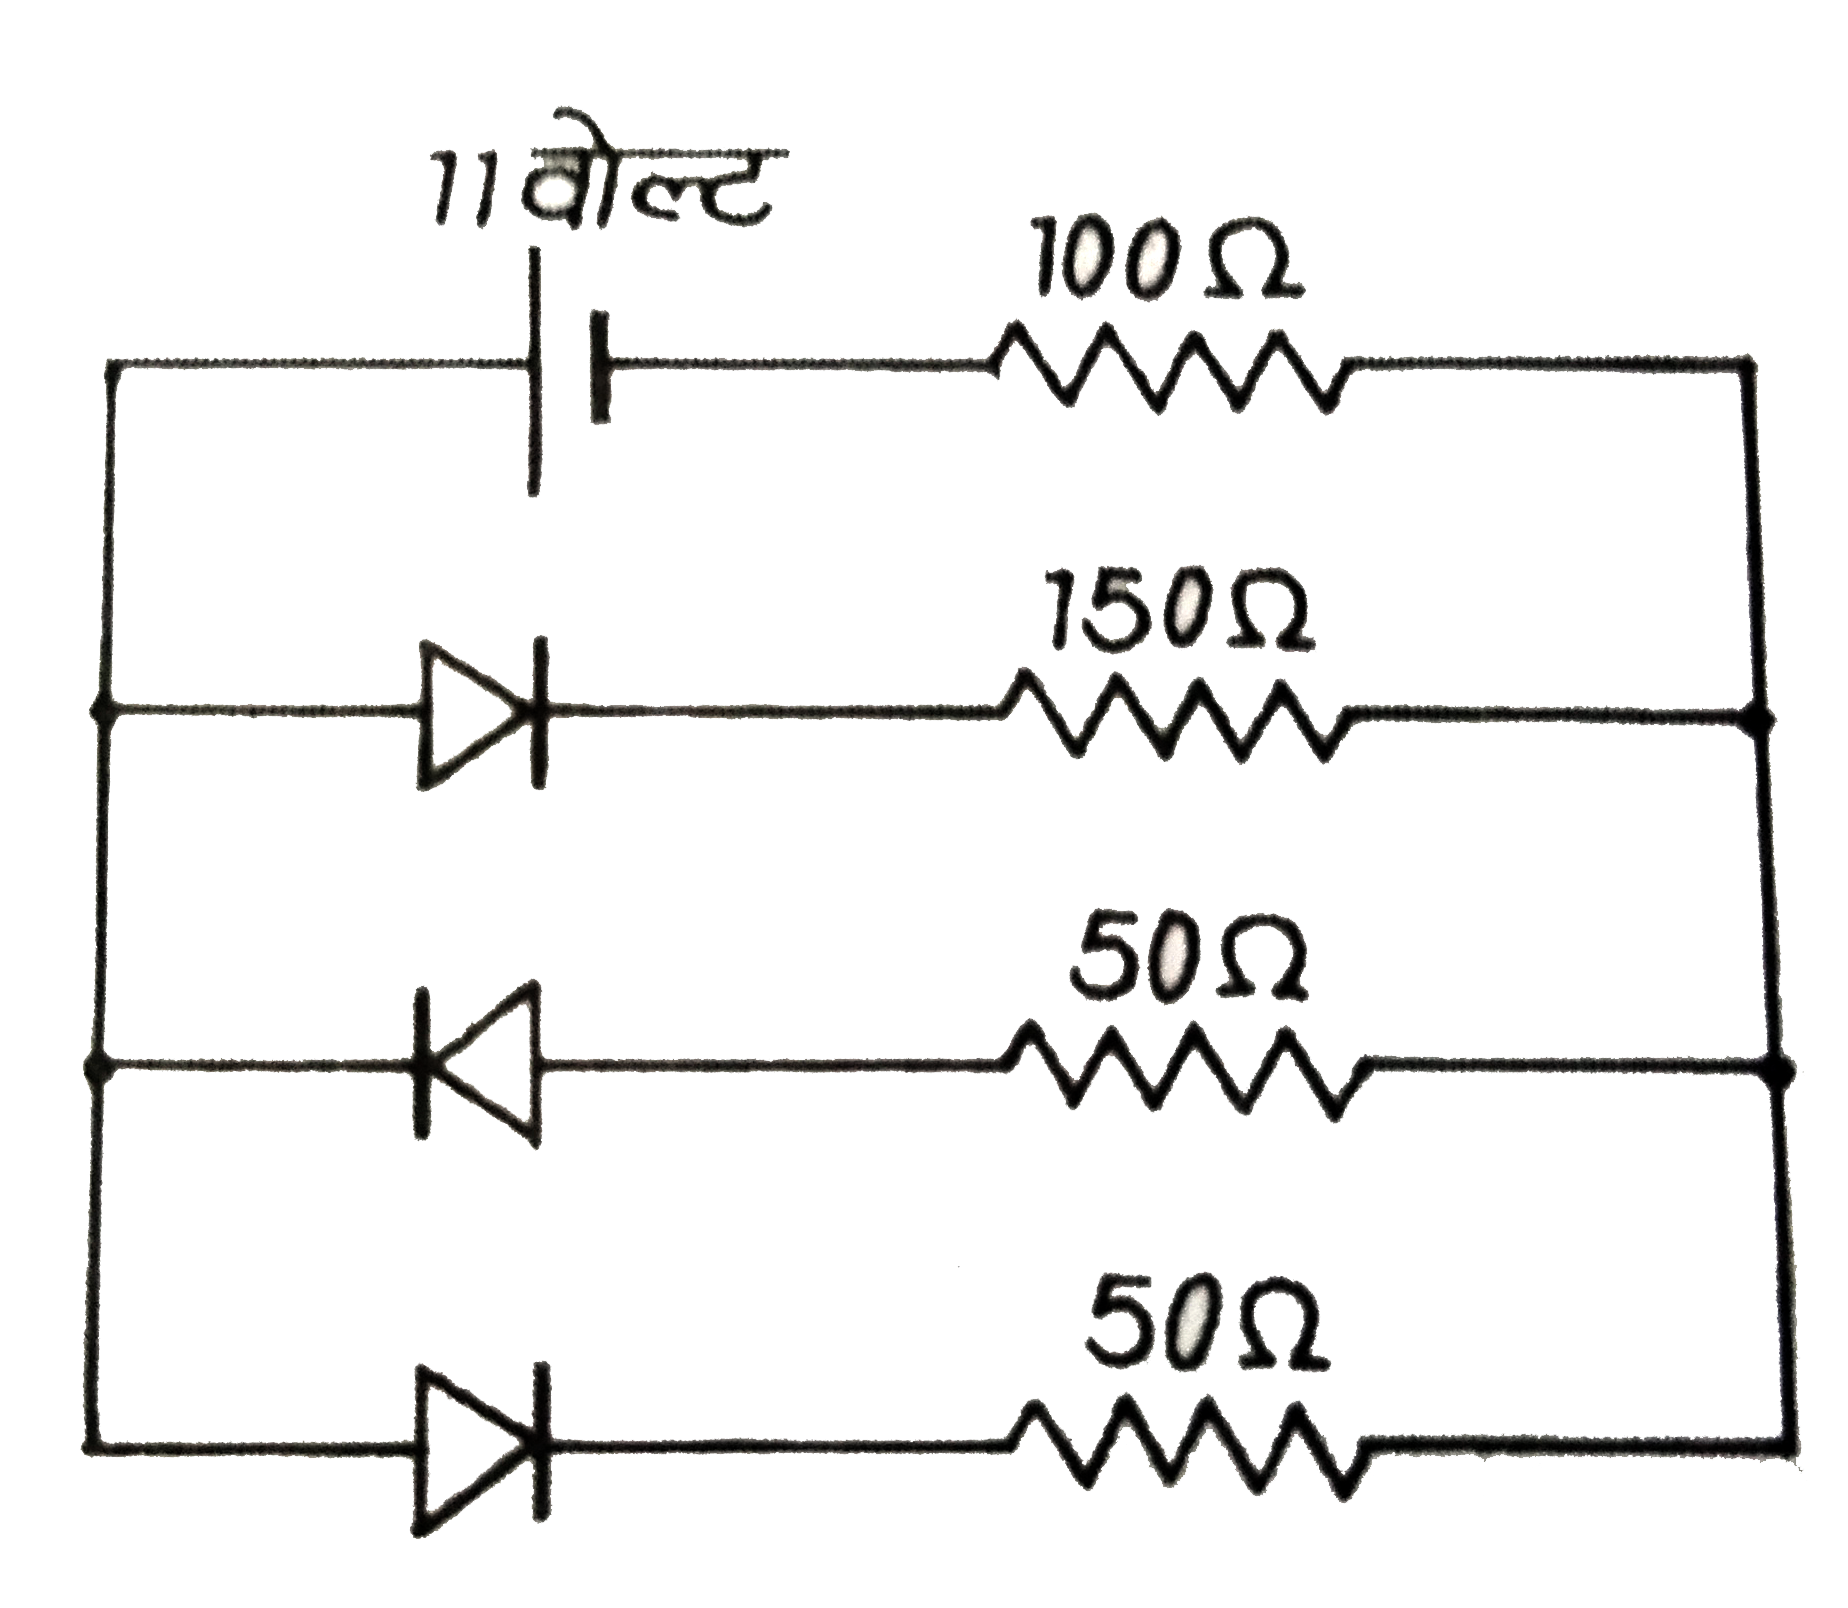 चित्र में प्रदर्शित तीन  ( p - n )  सन्धि  डायोड एक 11 वोल्ट की बैटरी के साथ जोड़े गए हैं। प्रत्येक डायोड से प्रवाहित धारा की गणना कीजिए।